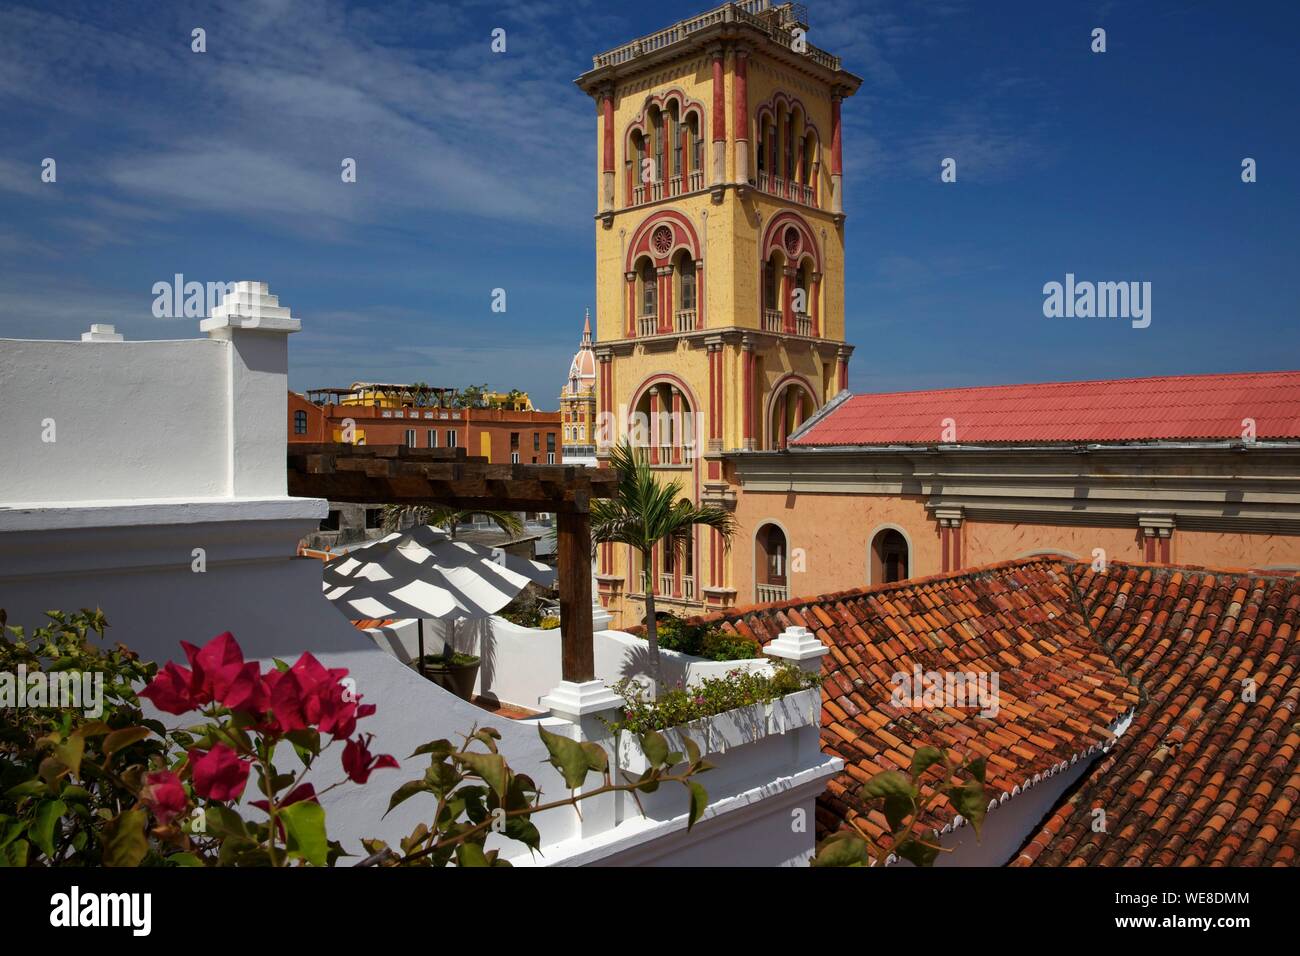 La Colombie, Département de Bolivar, Carthagène, inscrite au patrimoine mondial de l'UNESCO, les toits de la Casa San Agustin colonial boutique-hôtel avec vue sur la tour de style mauresque de l'Université de Carthagène, campus de San Agustin Banque D'Images